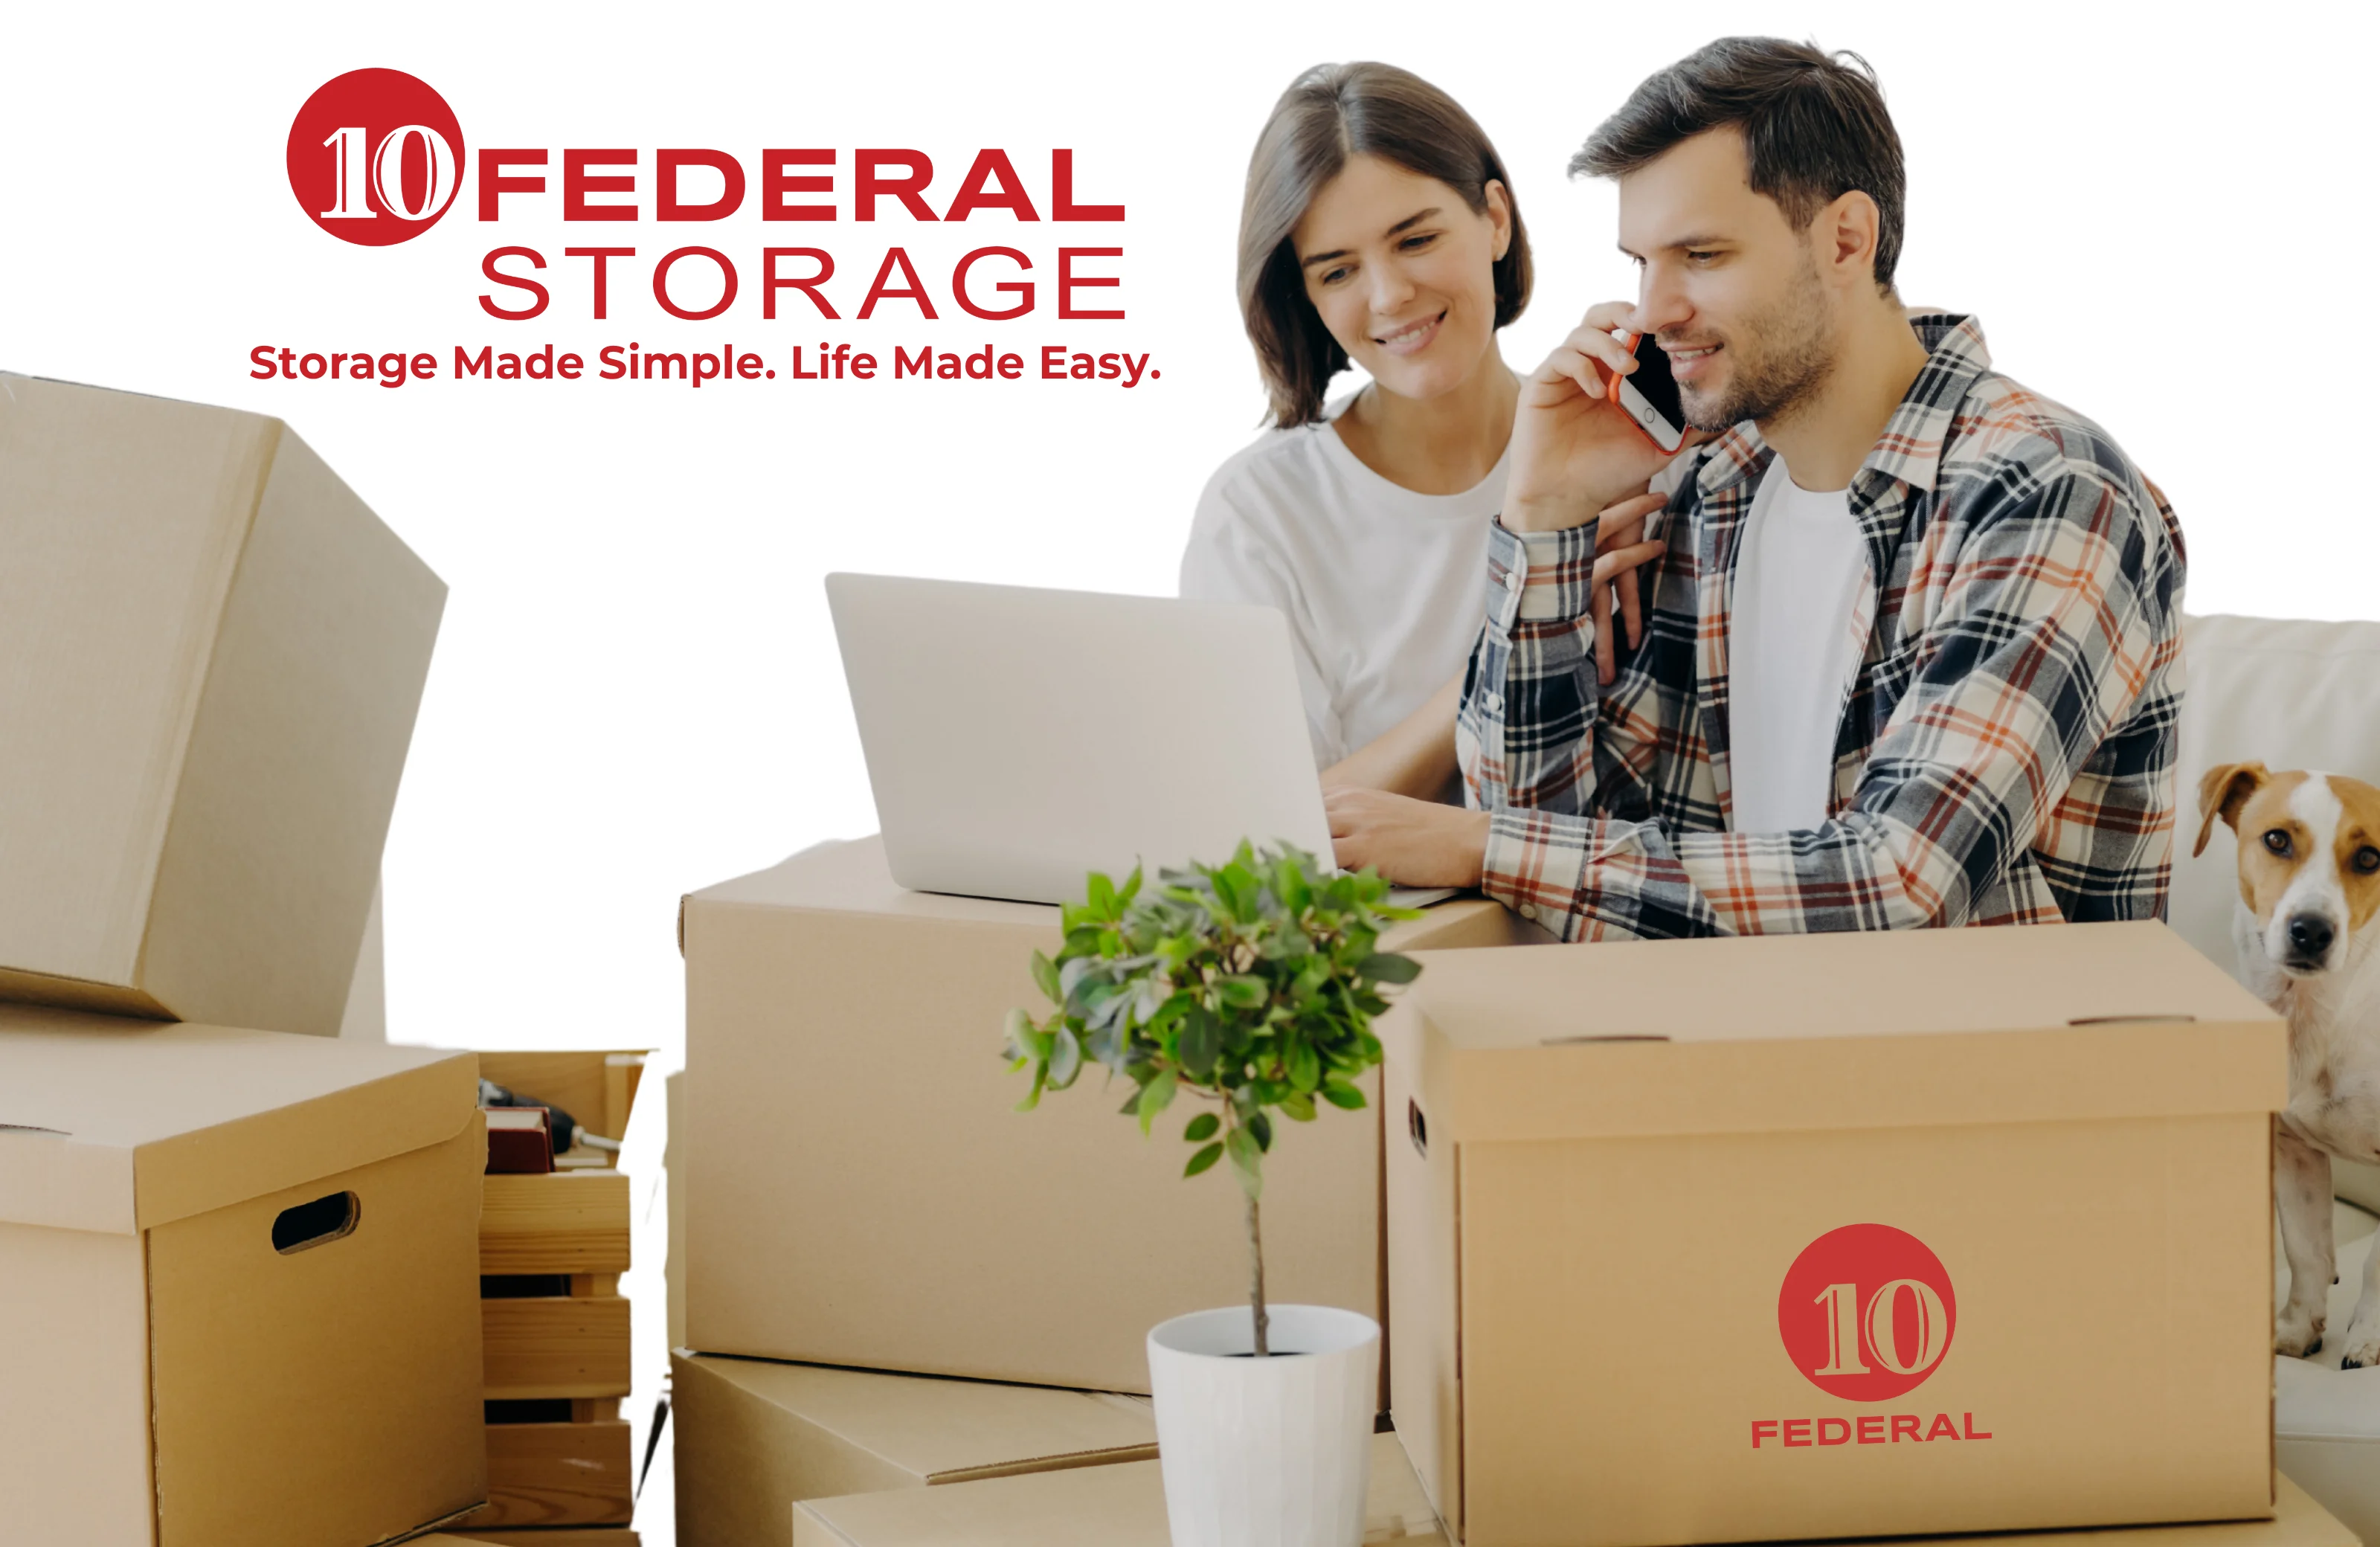 10 federal storage